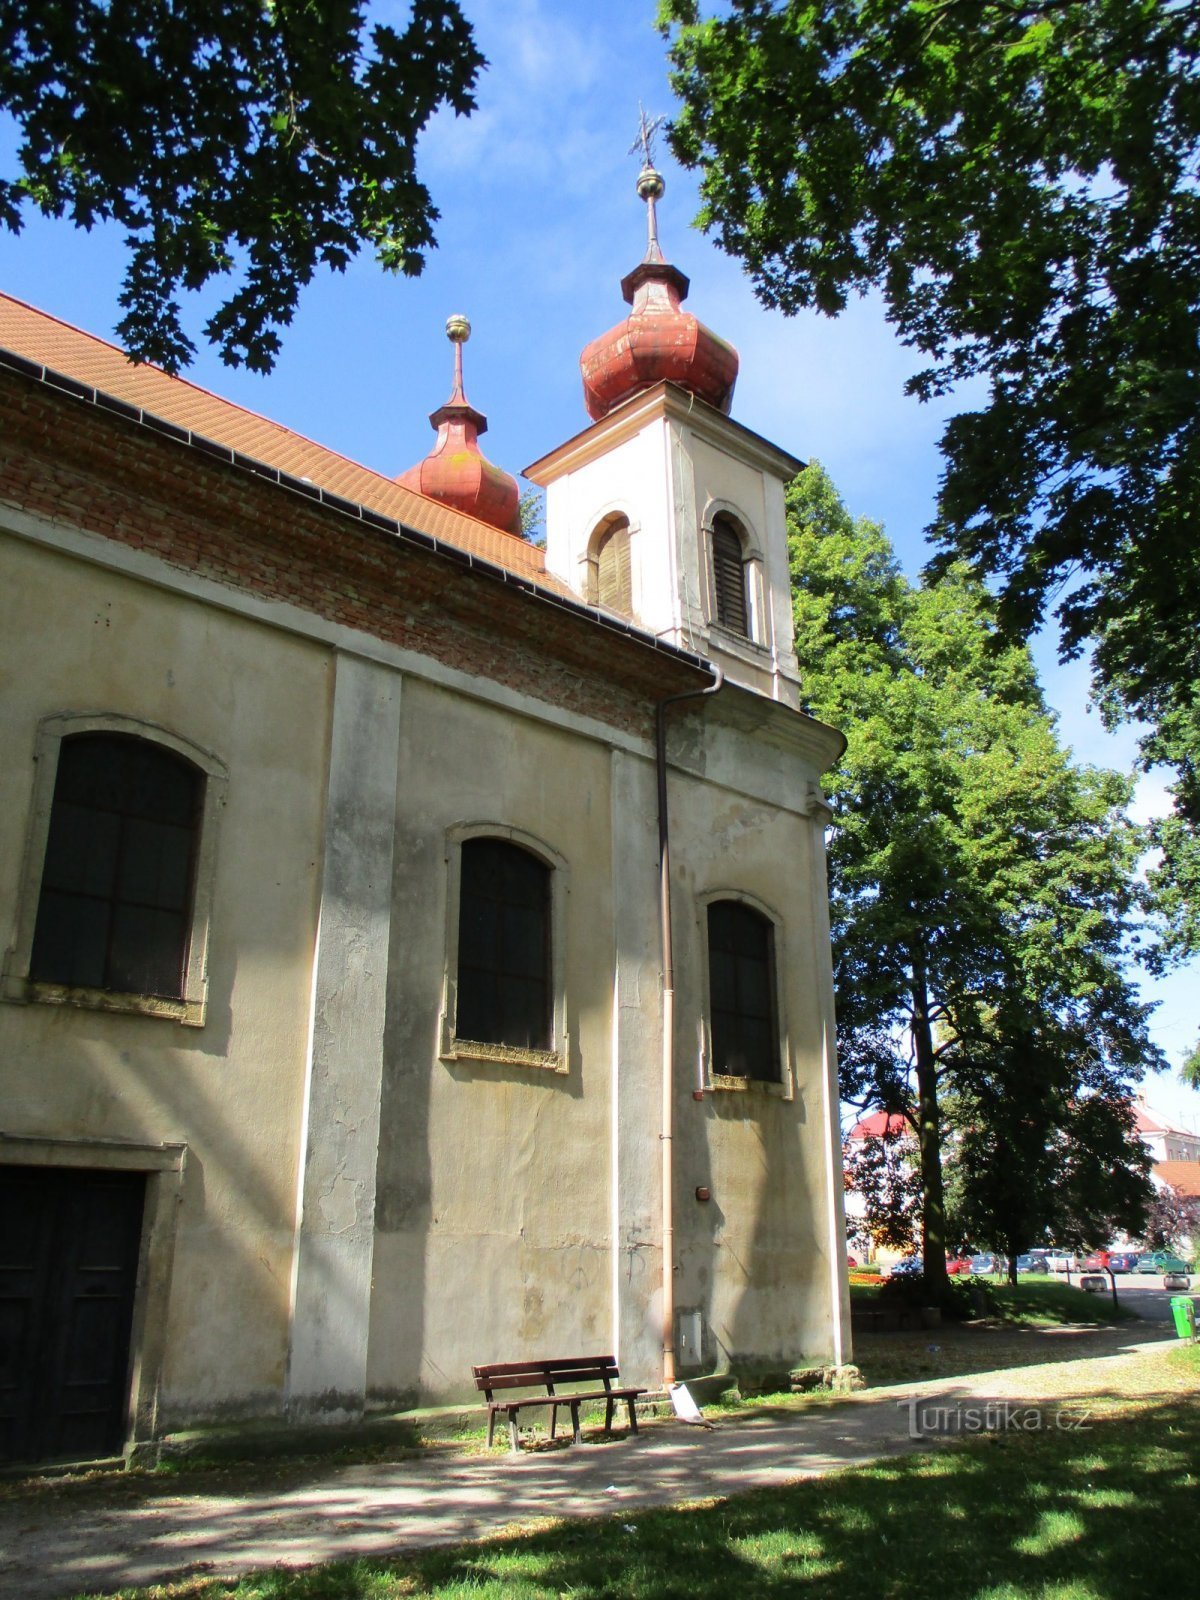 Den heliga treenighetens kyrka (Nový Bydžov, 5.7.2020 juli XNUMX)